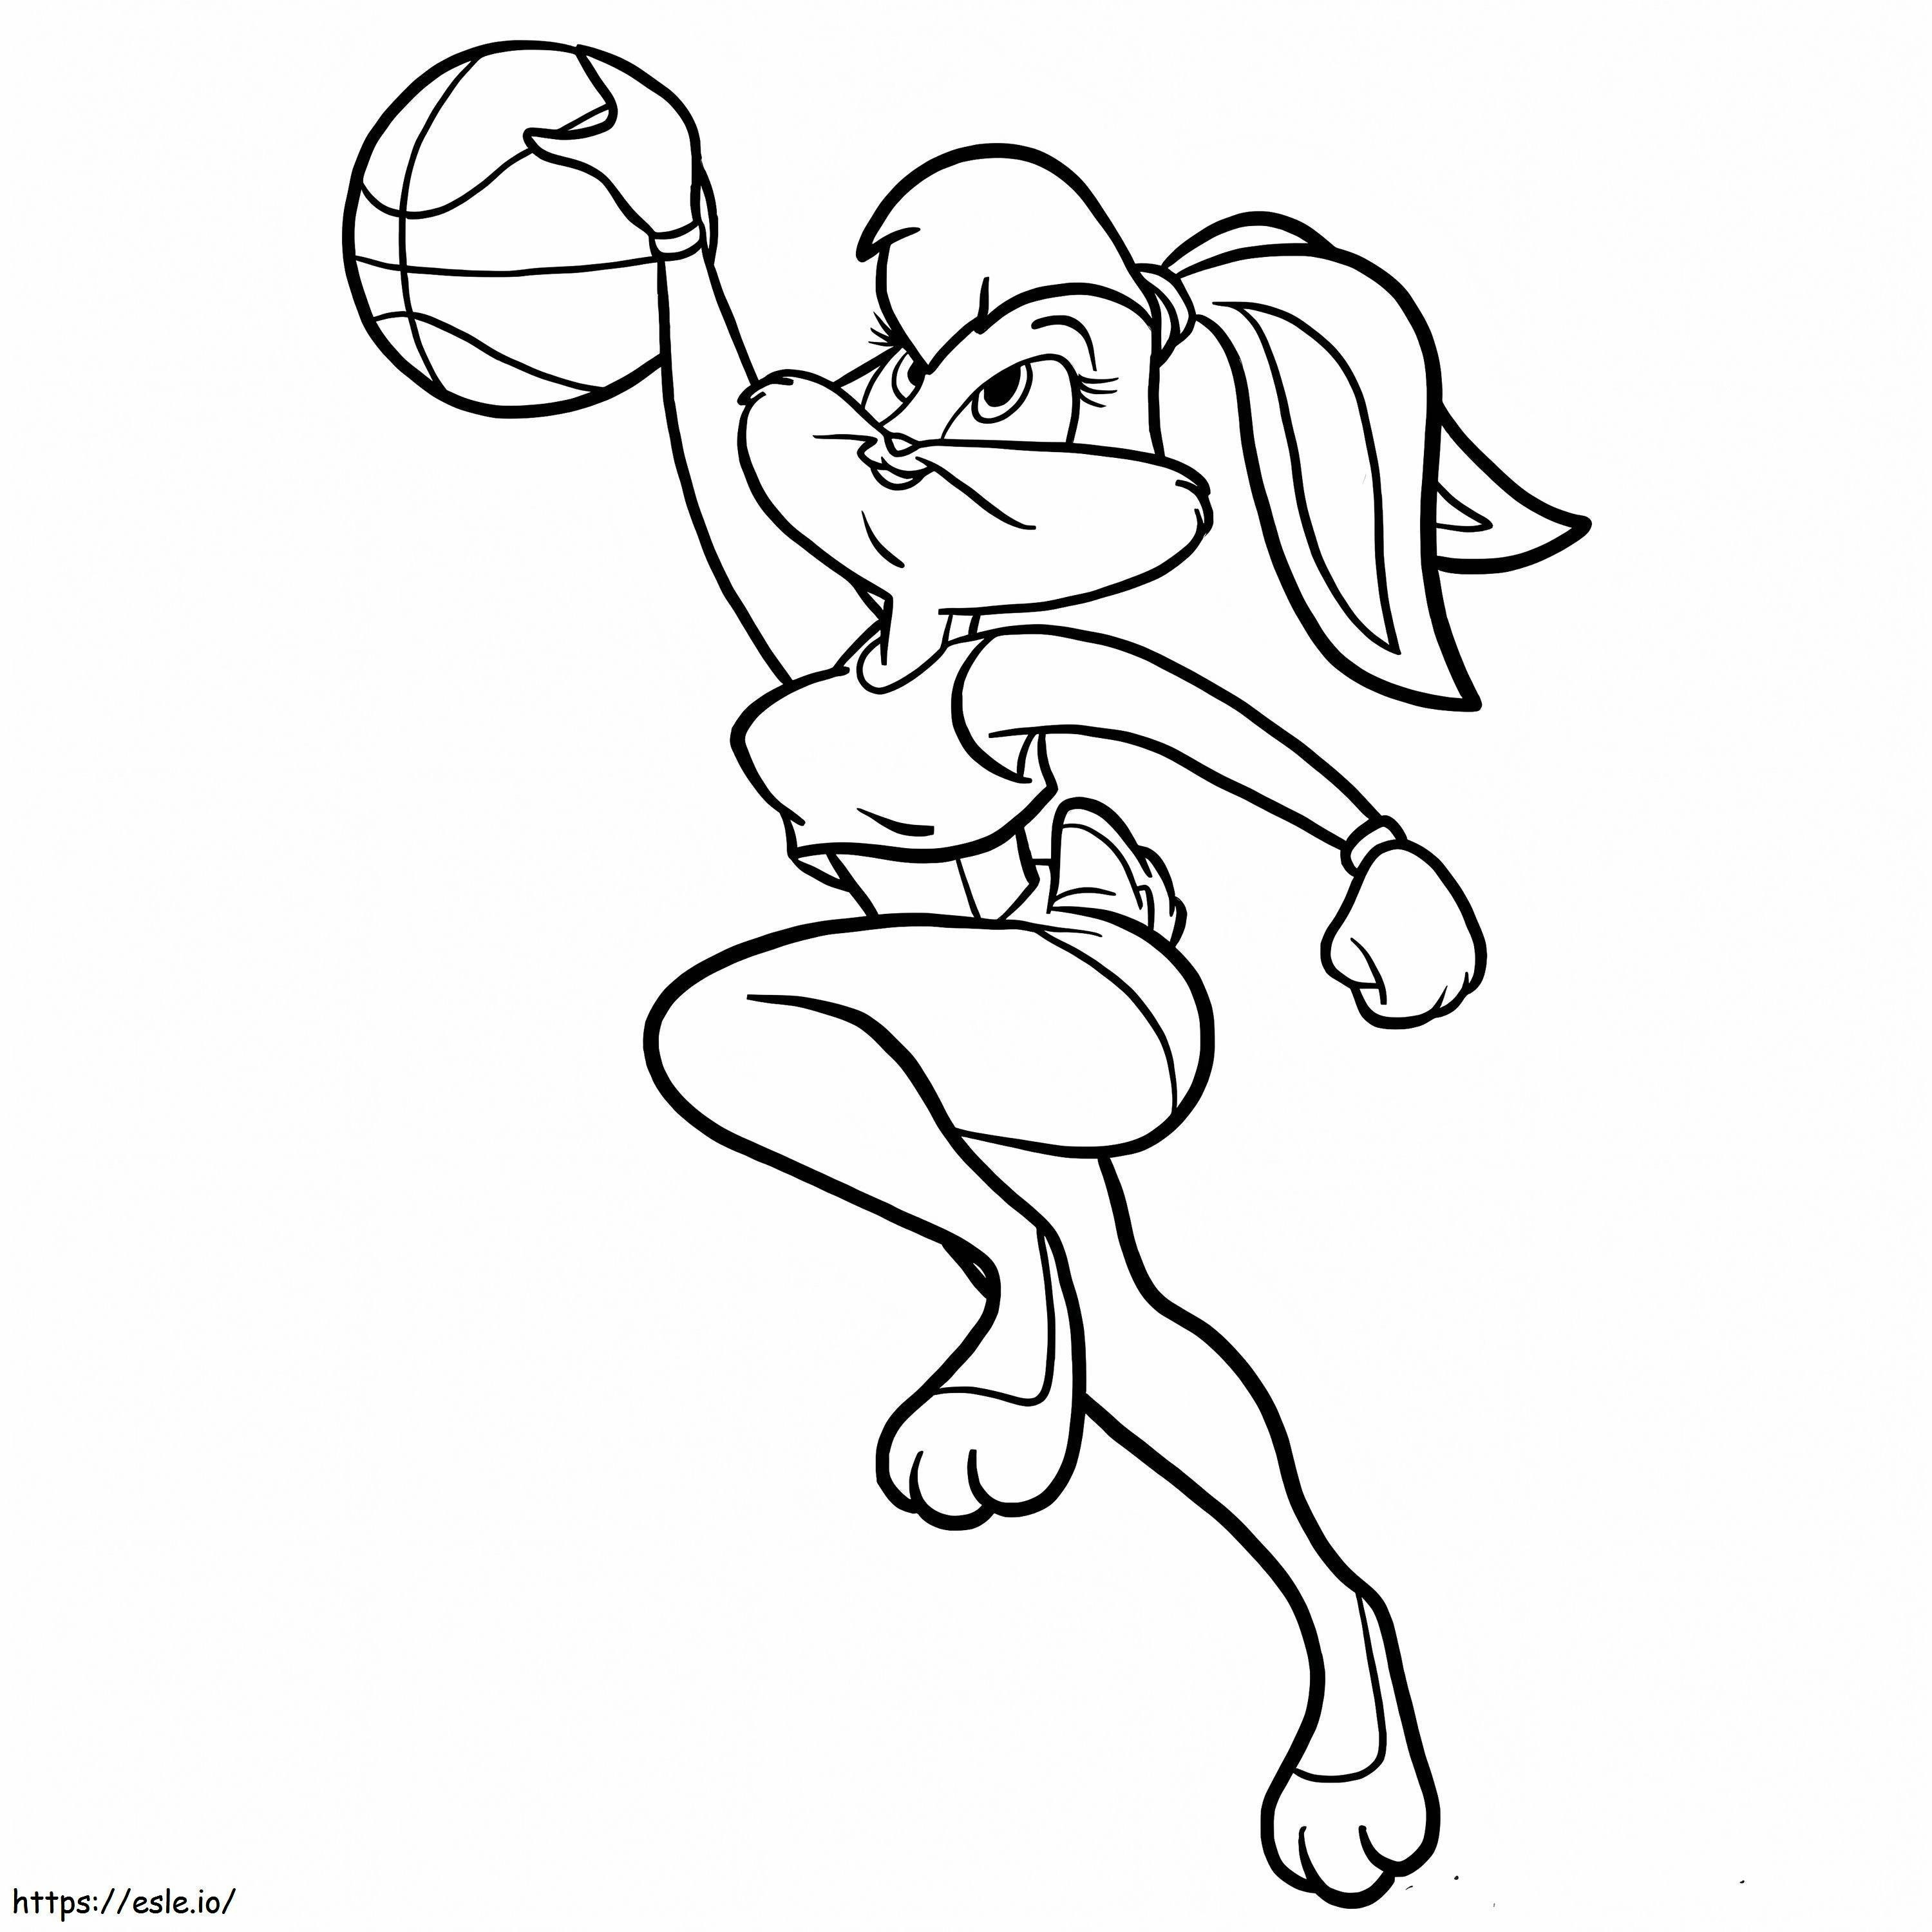 Looney Tunes Króliczek Lola gra w koszykówkę kolorowanka